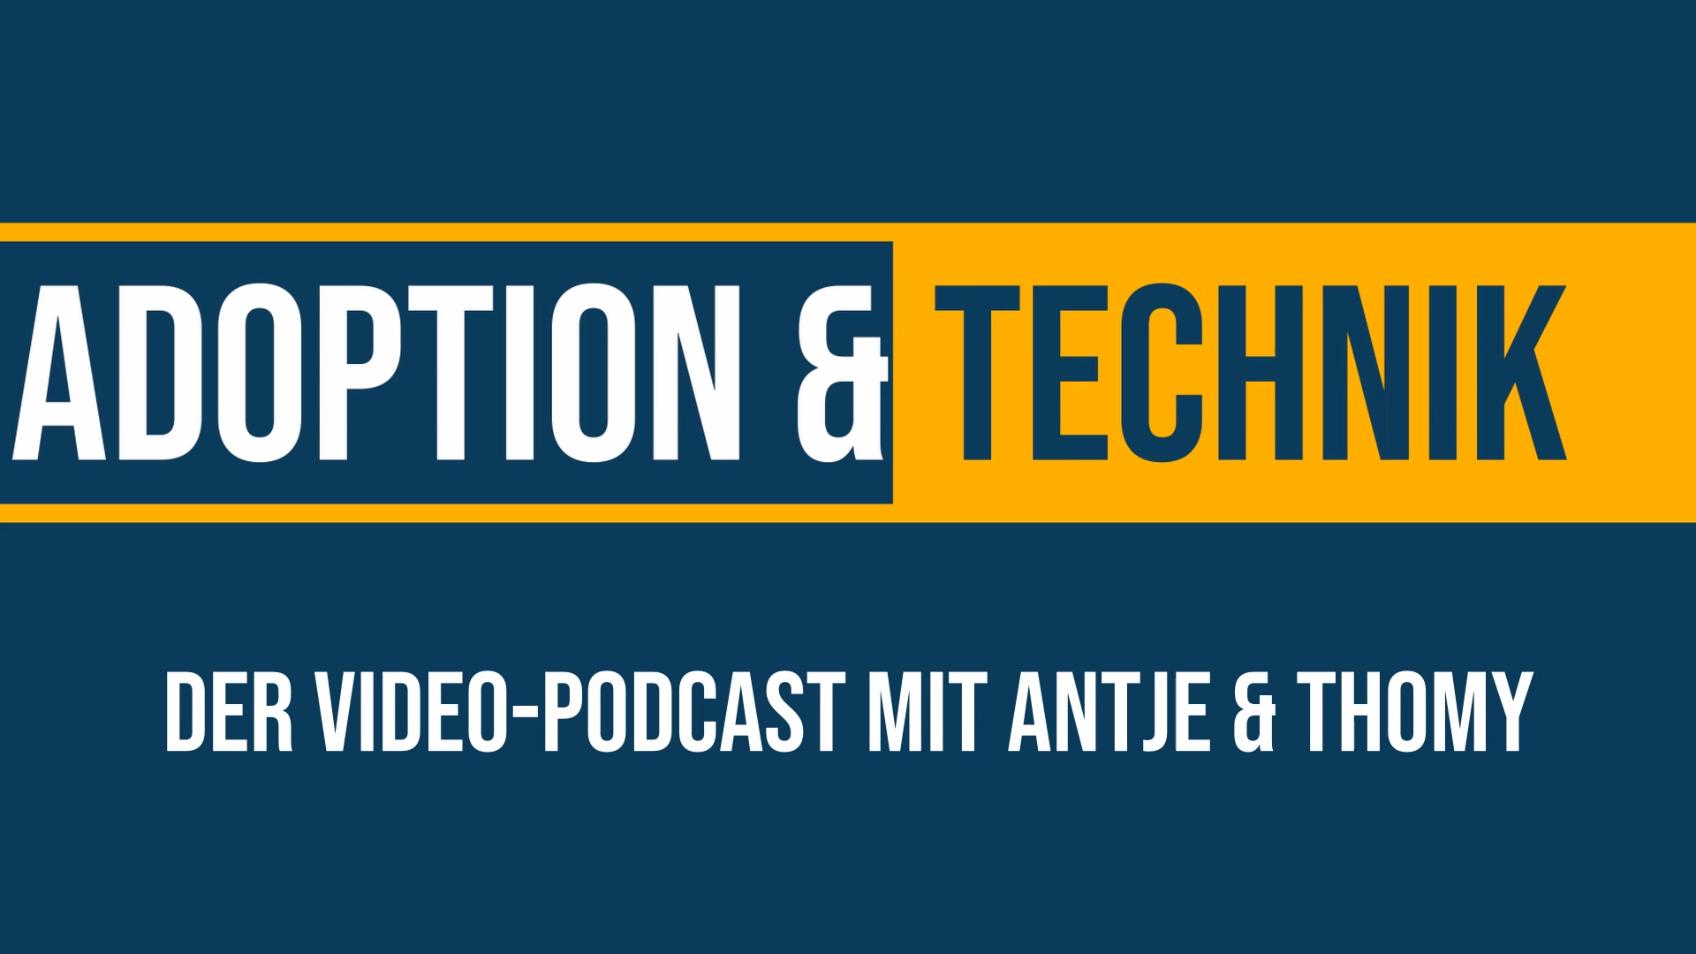 Adoption & Technik - ein neuer Podcast